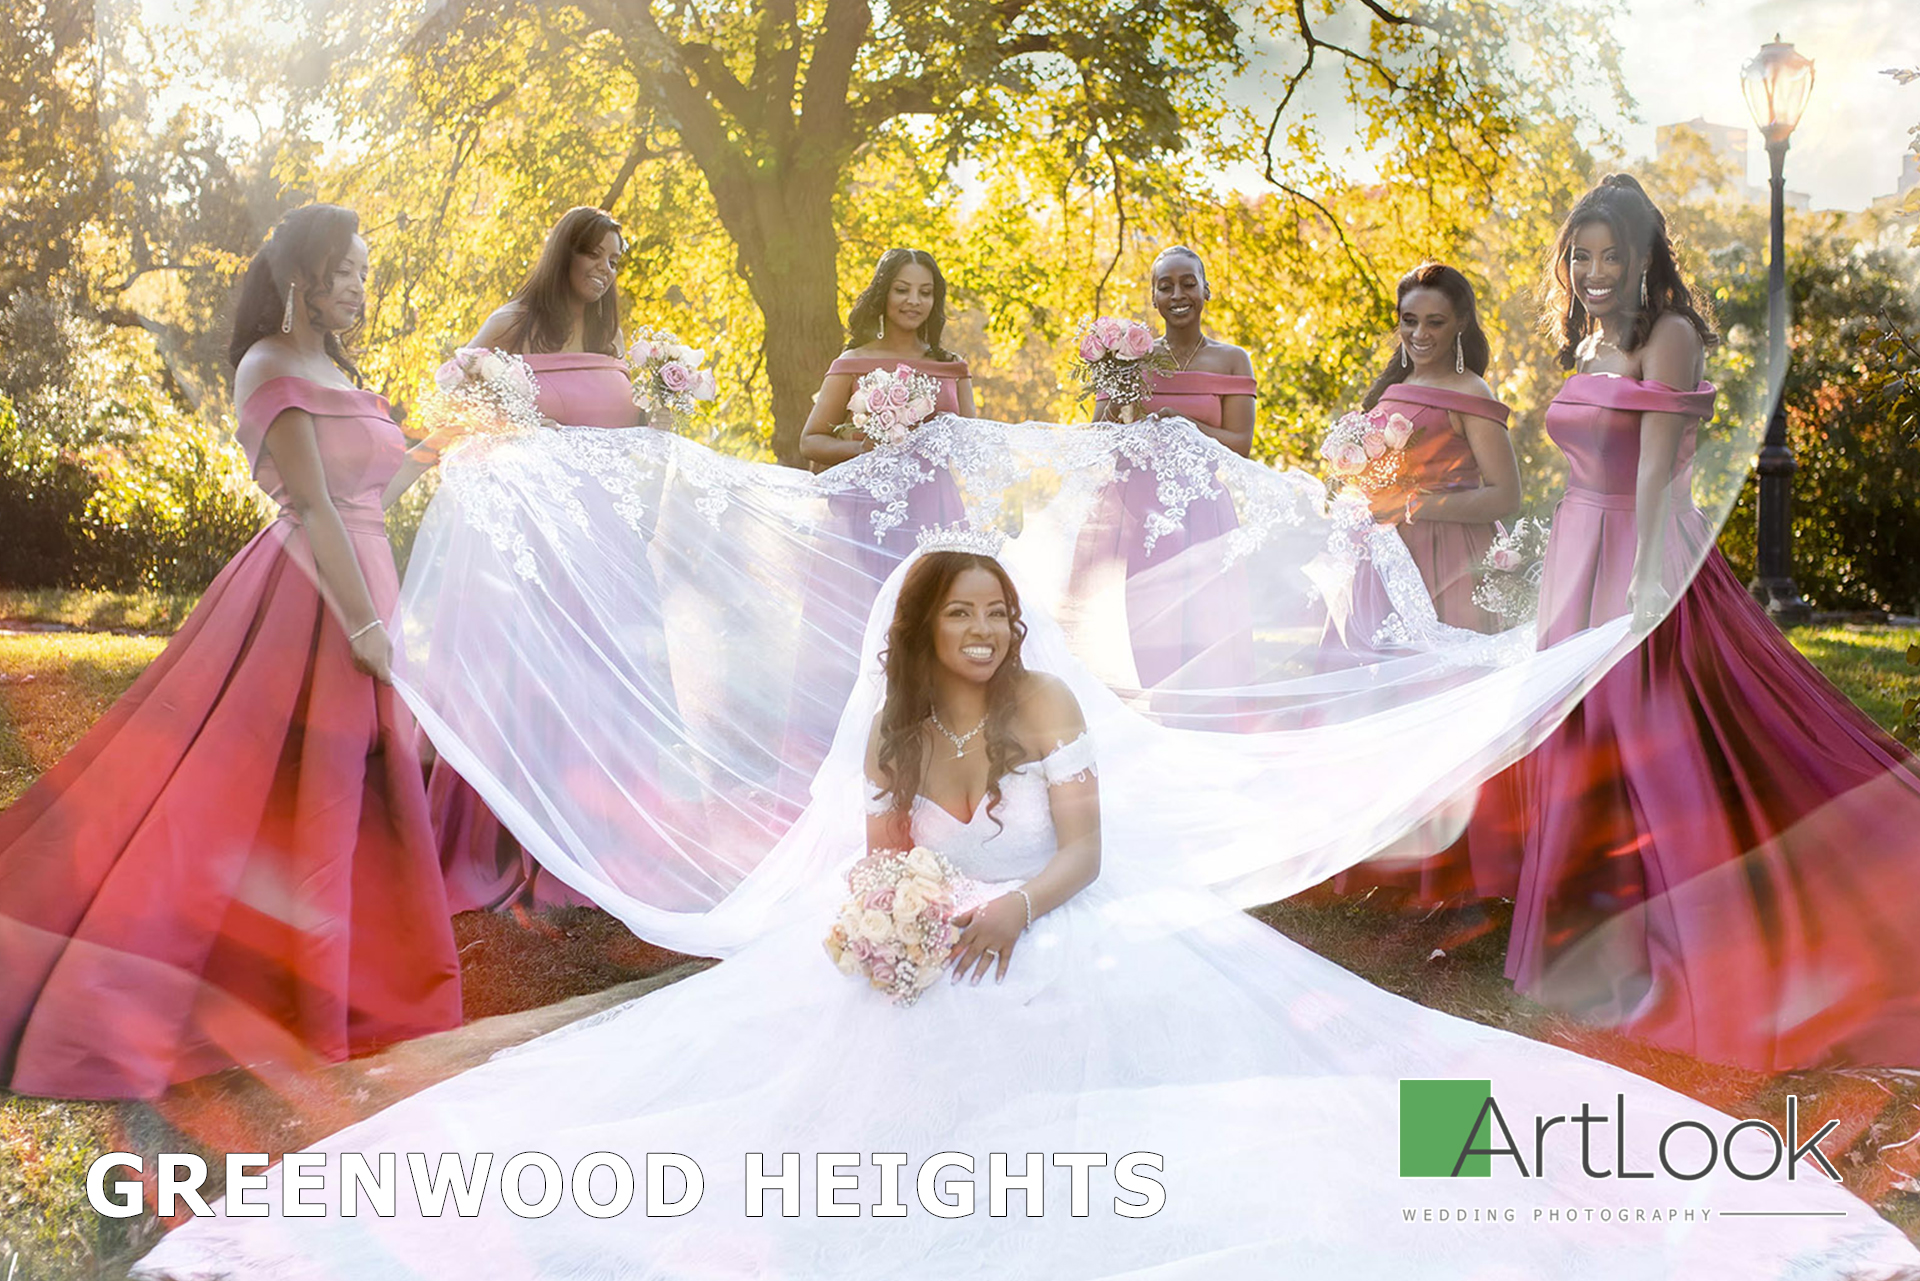 Greenwood Grace: Artlook Weddings Photography Capturing Love's Splendor